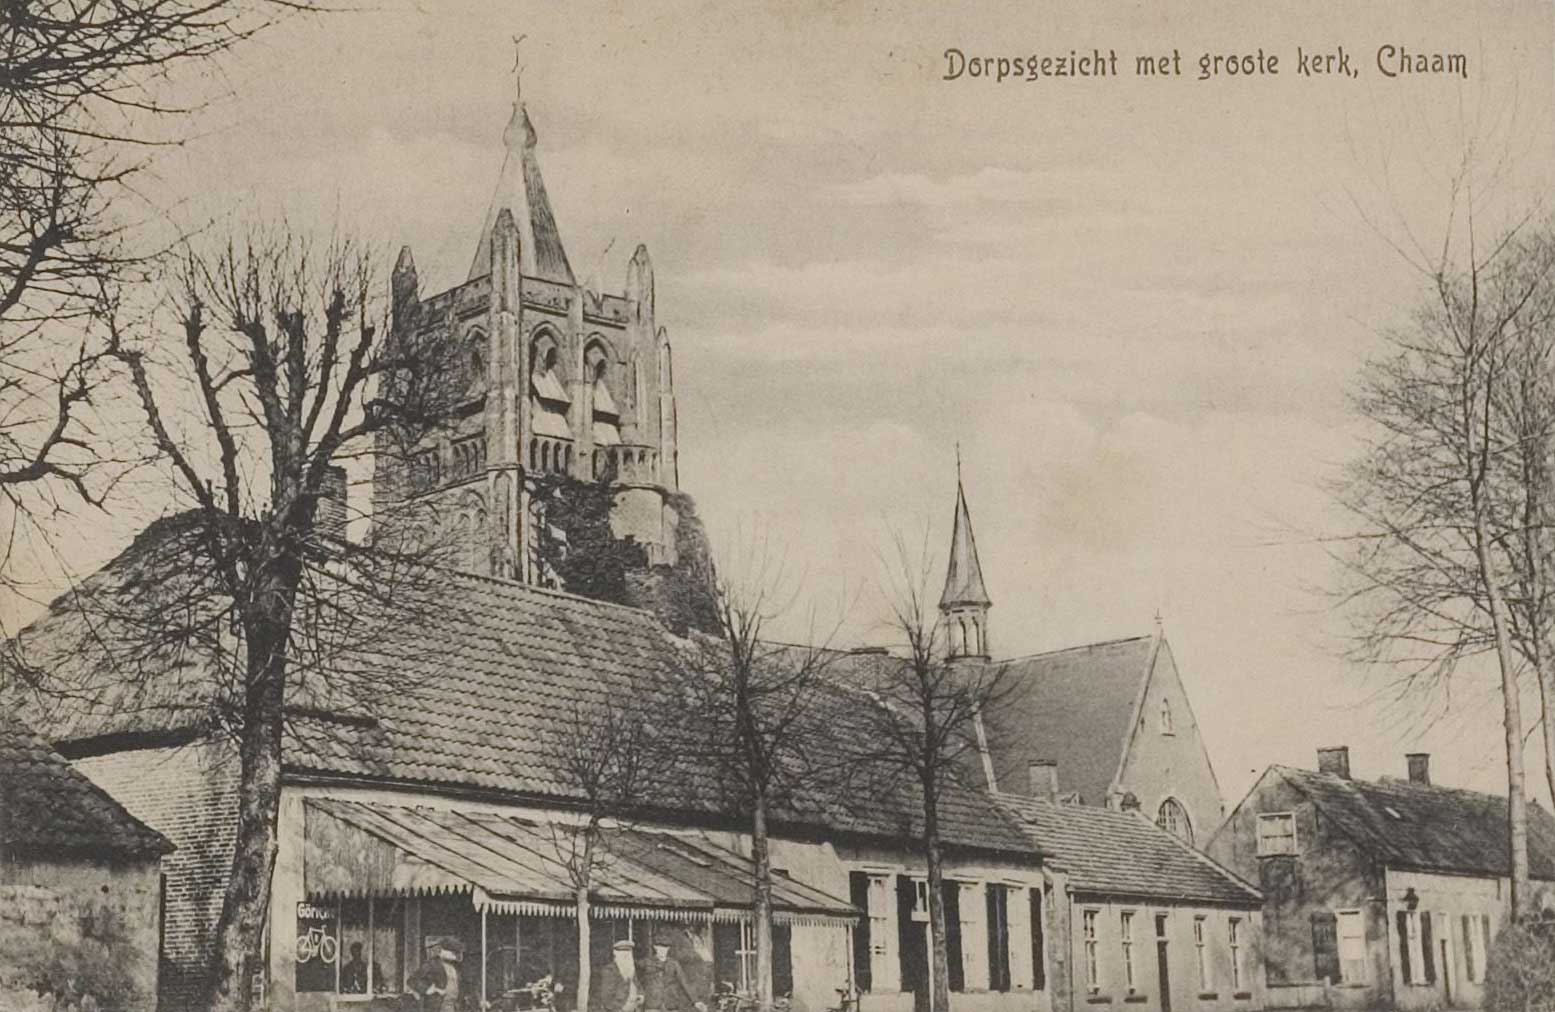 Dorpsgezicht met NH kerk, 1915 (RAT)